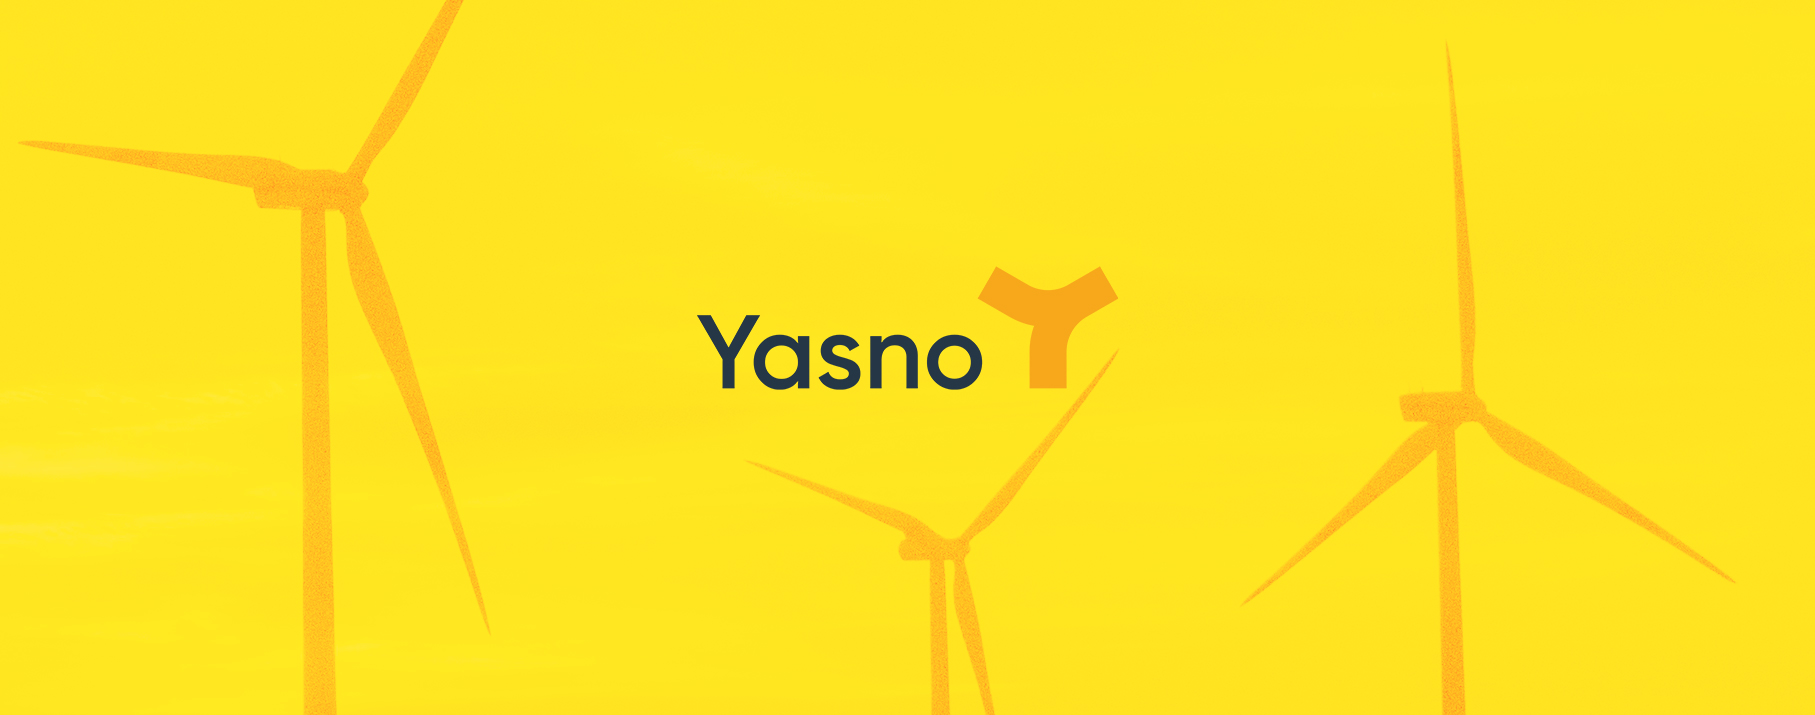 Yasno